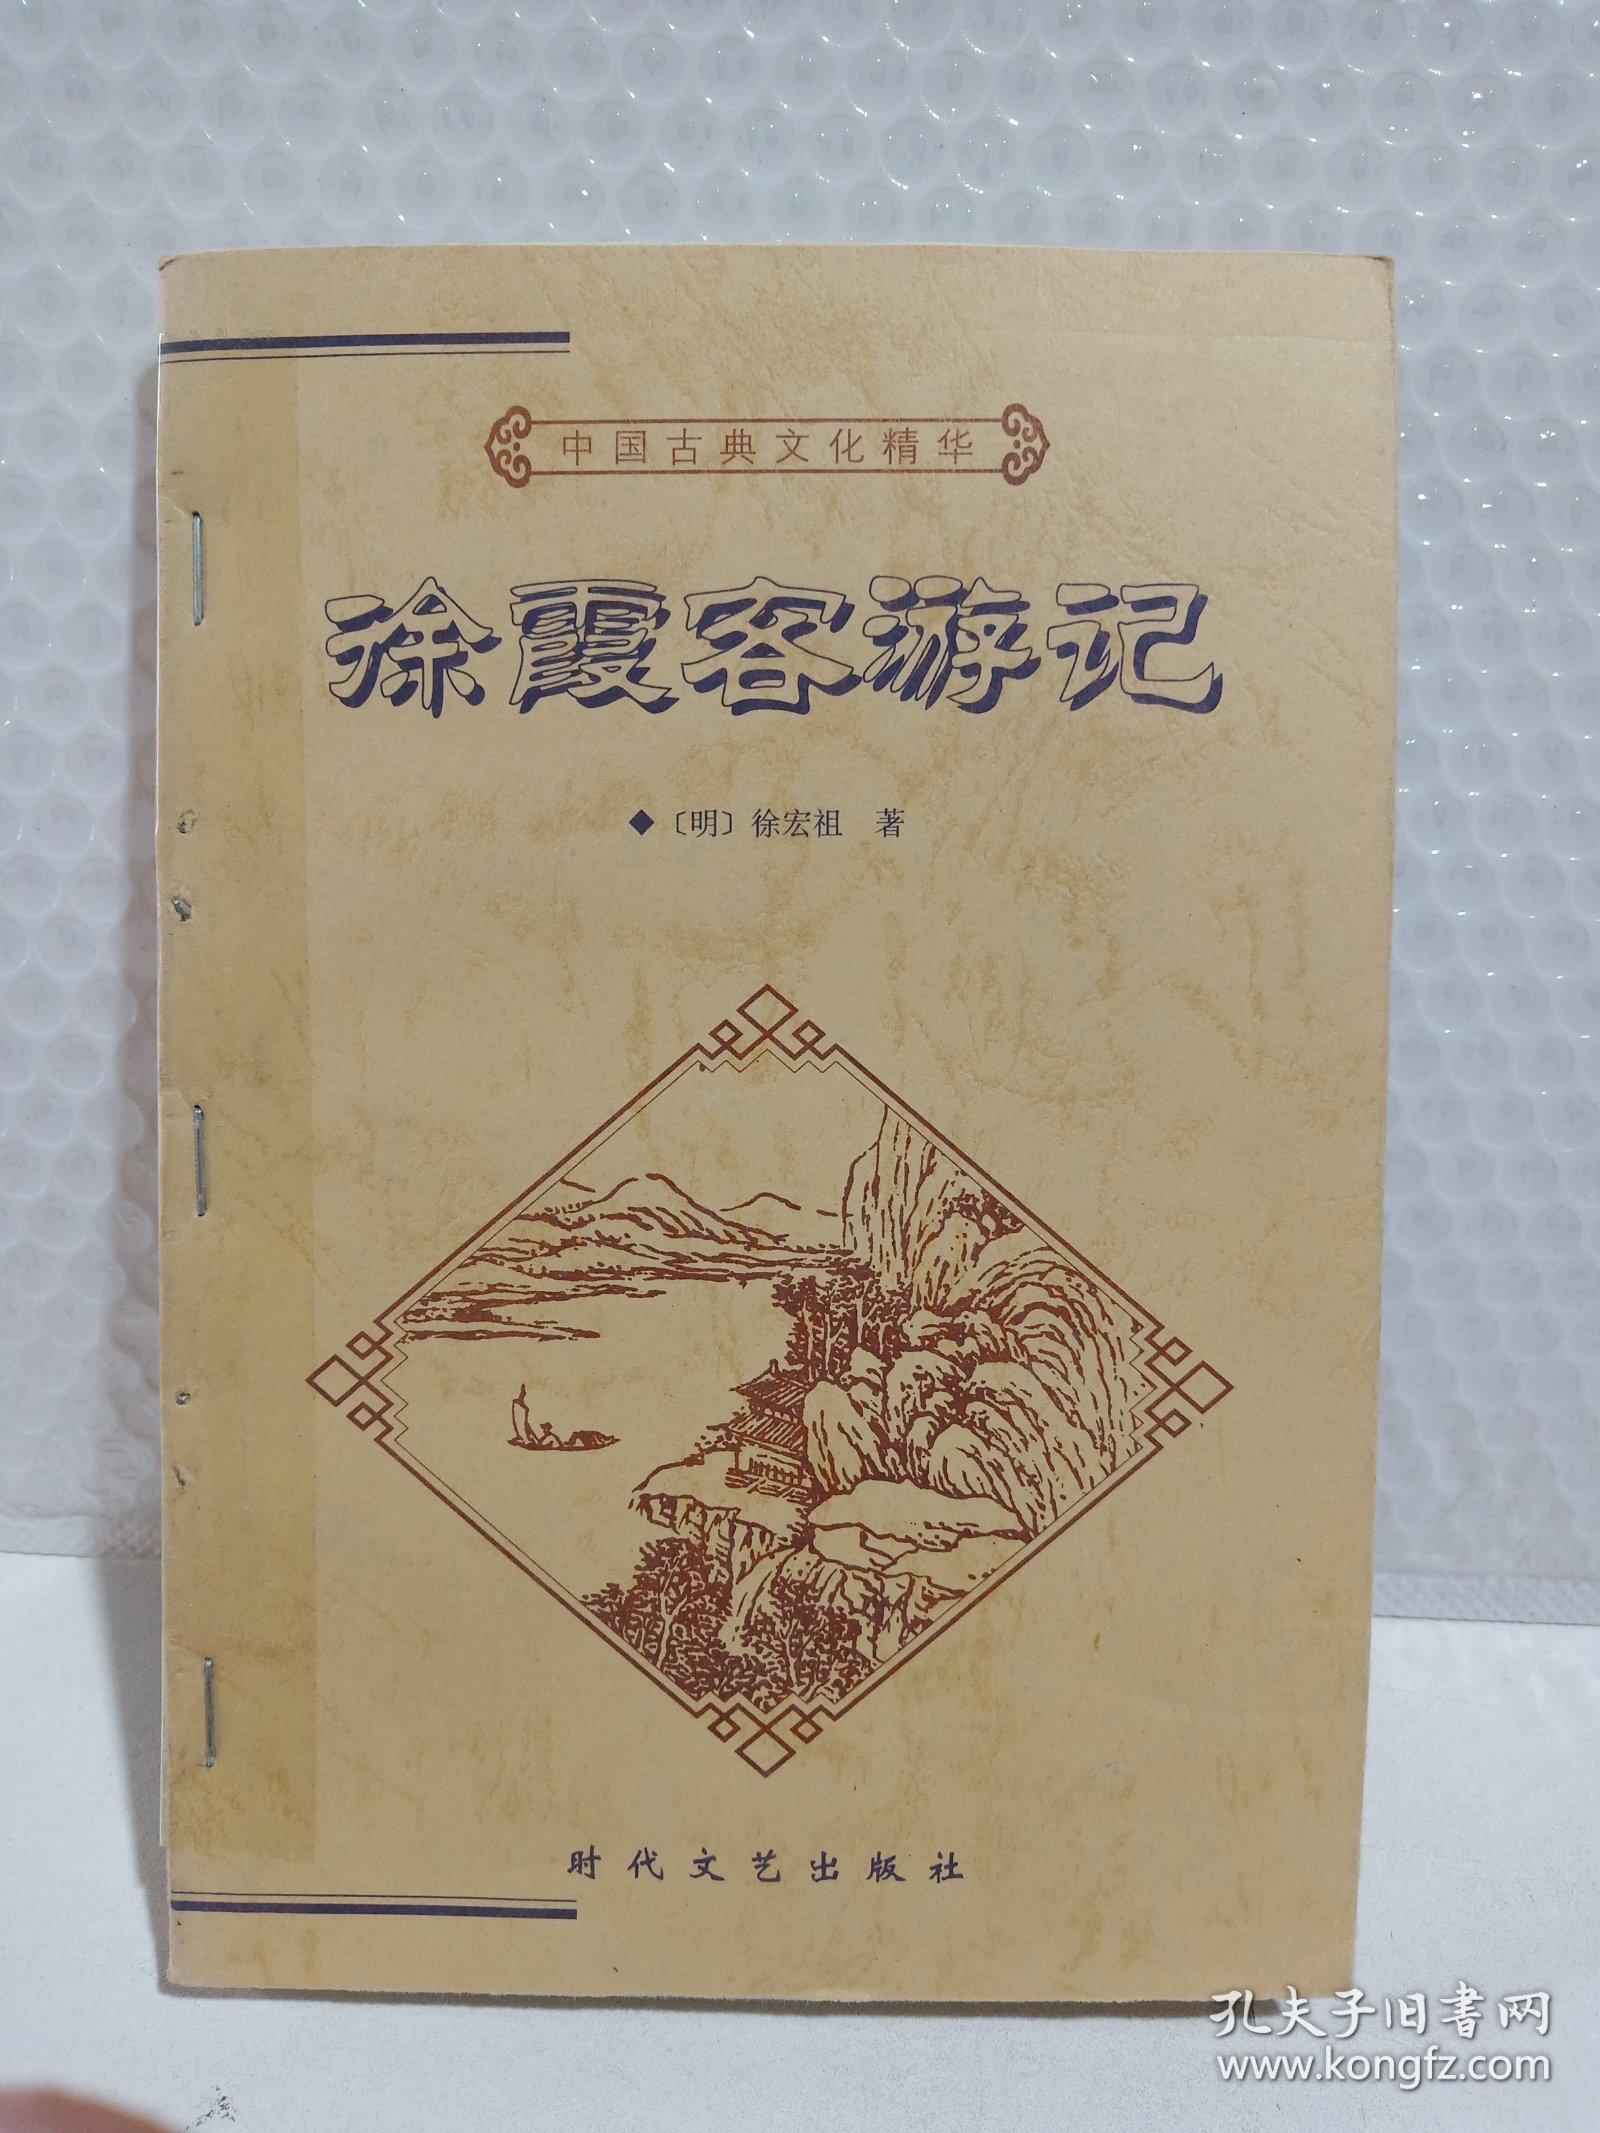 中国古典文化精华丛书《徐霞客游记》上